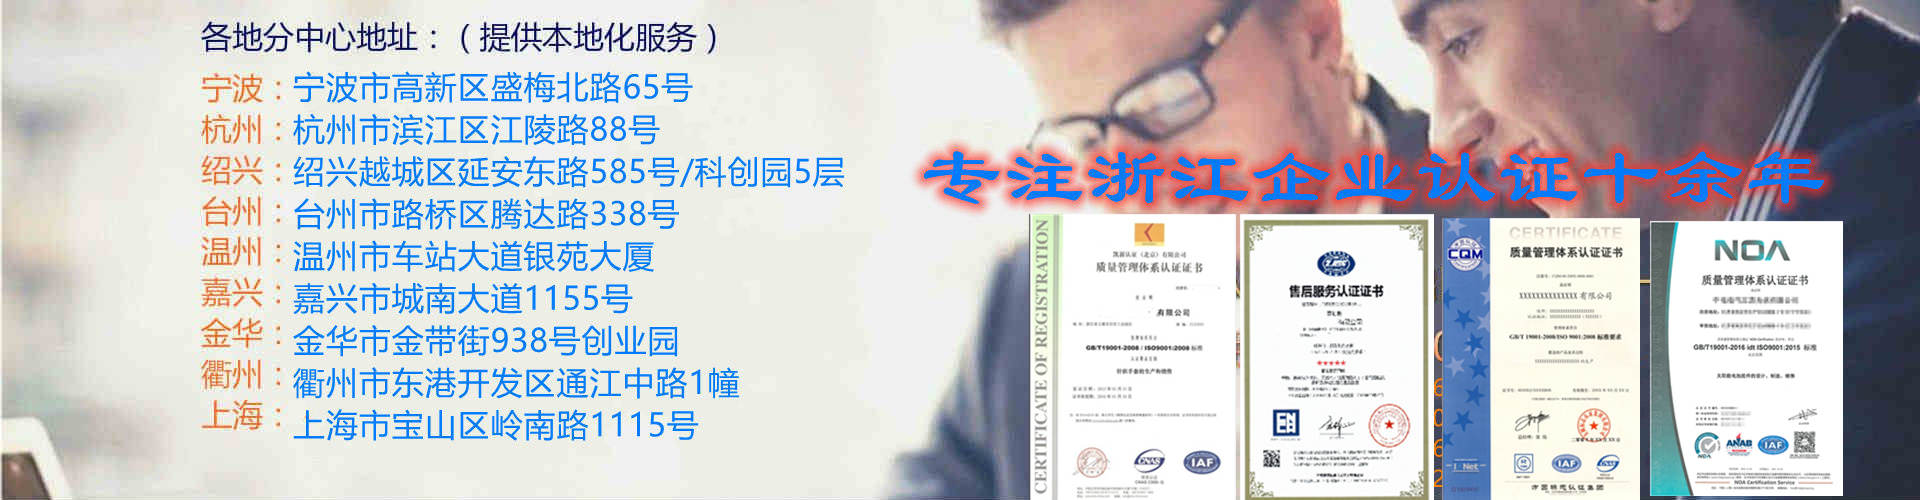 2021杭州ISO9001认证排名 办理流程